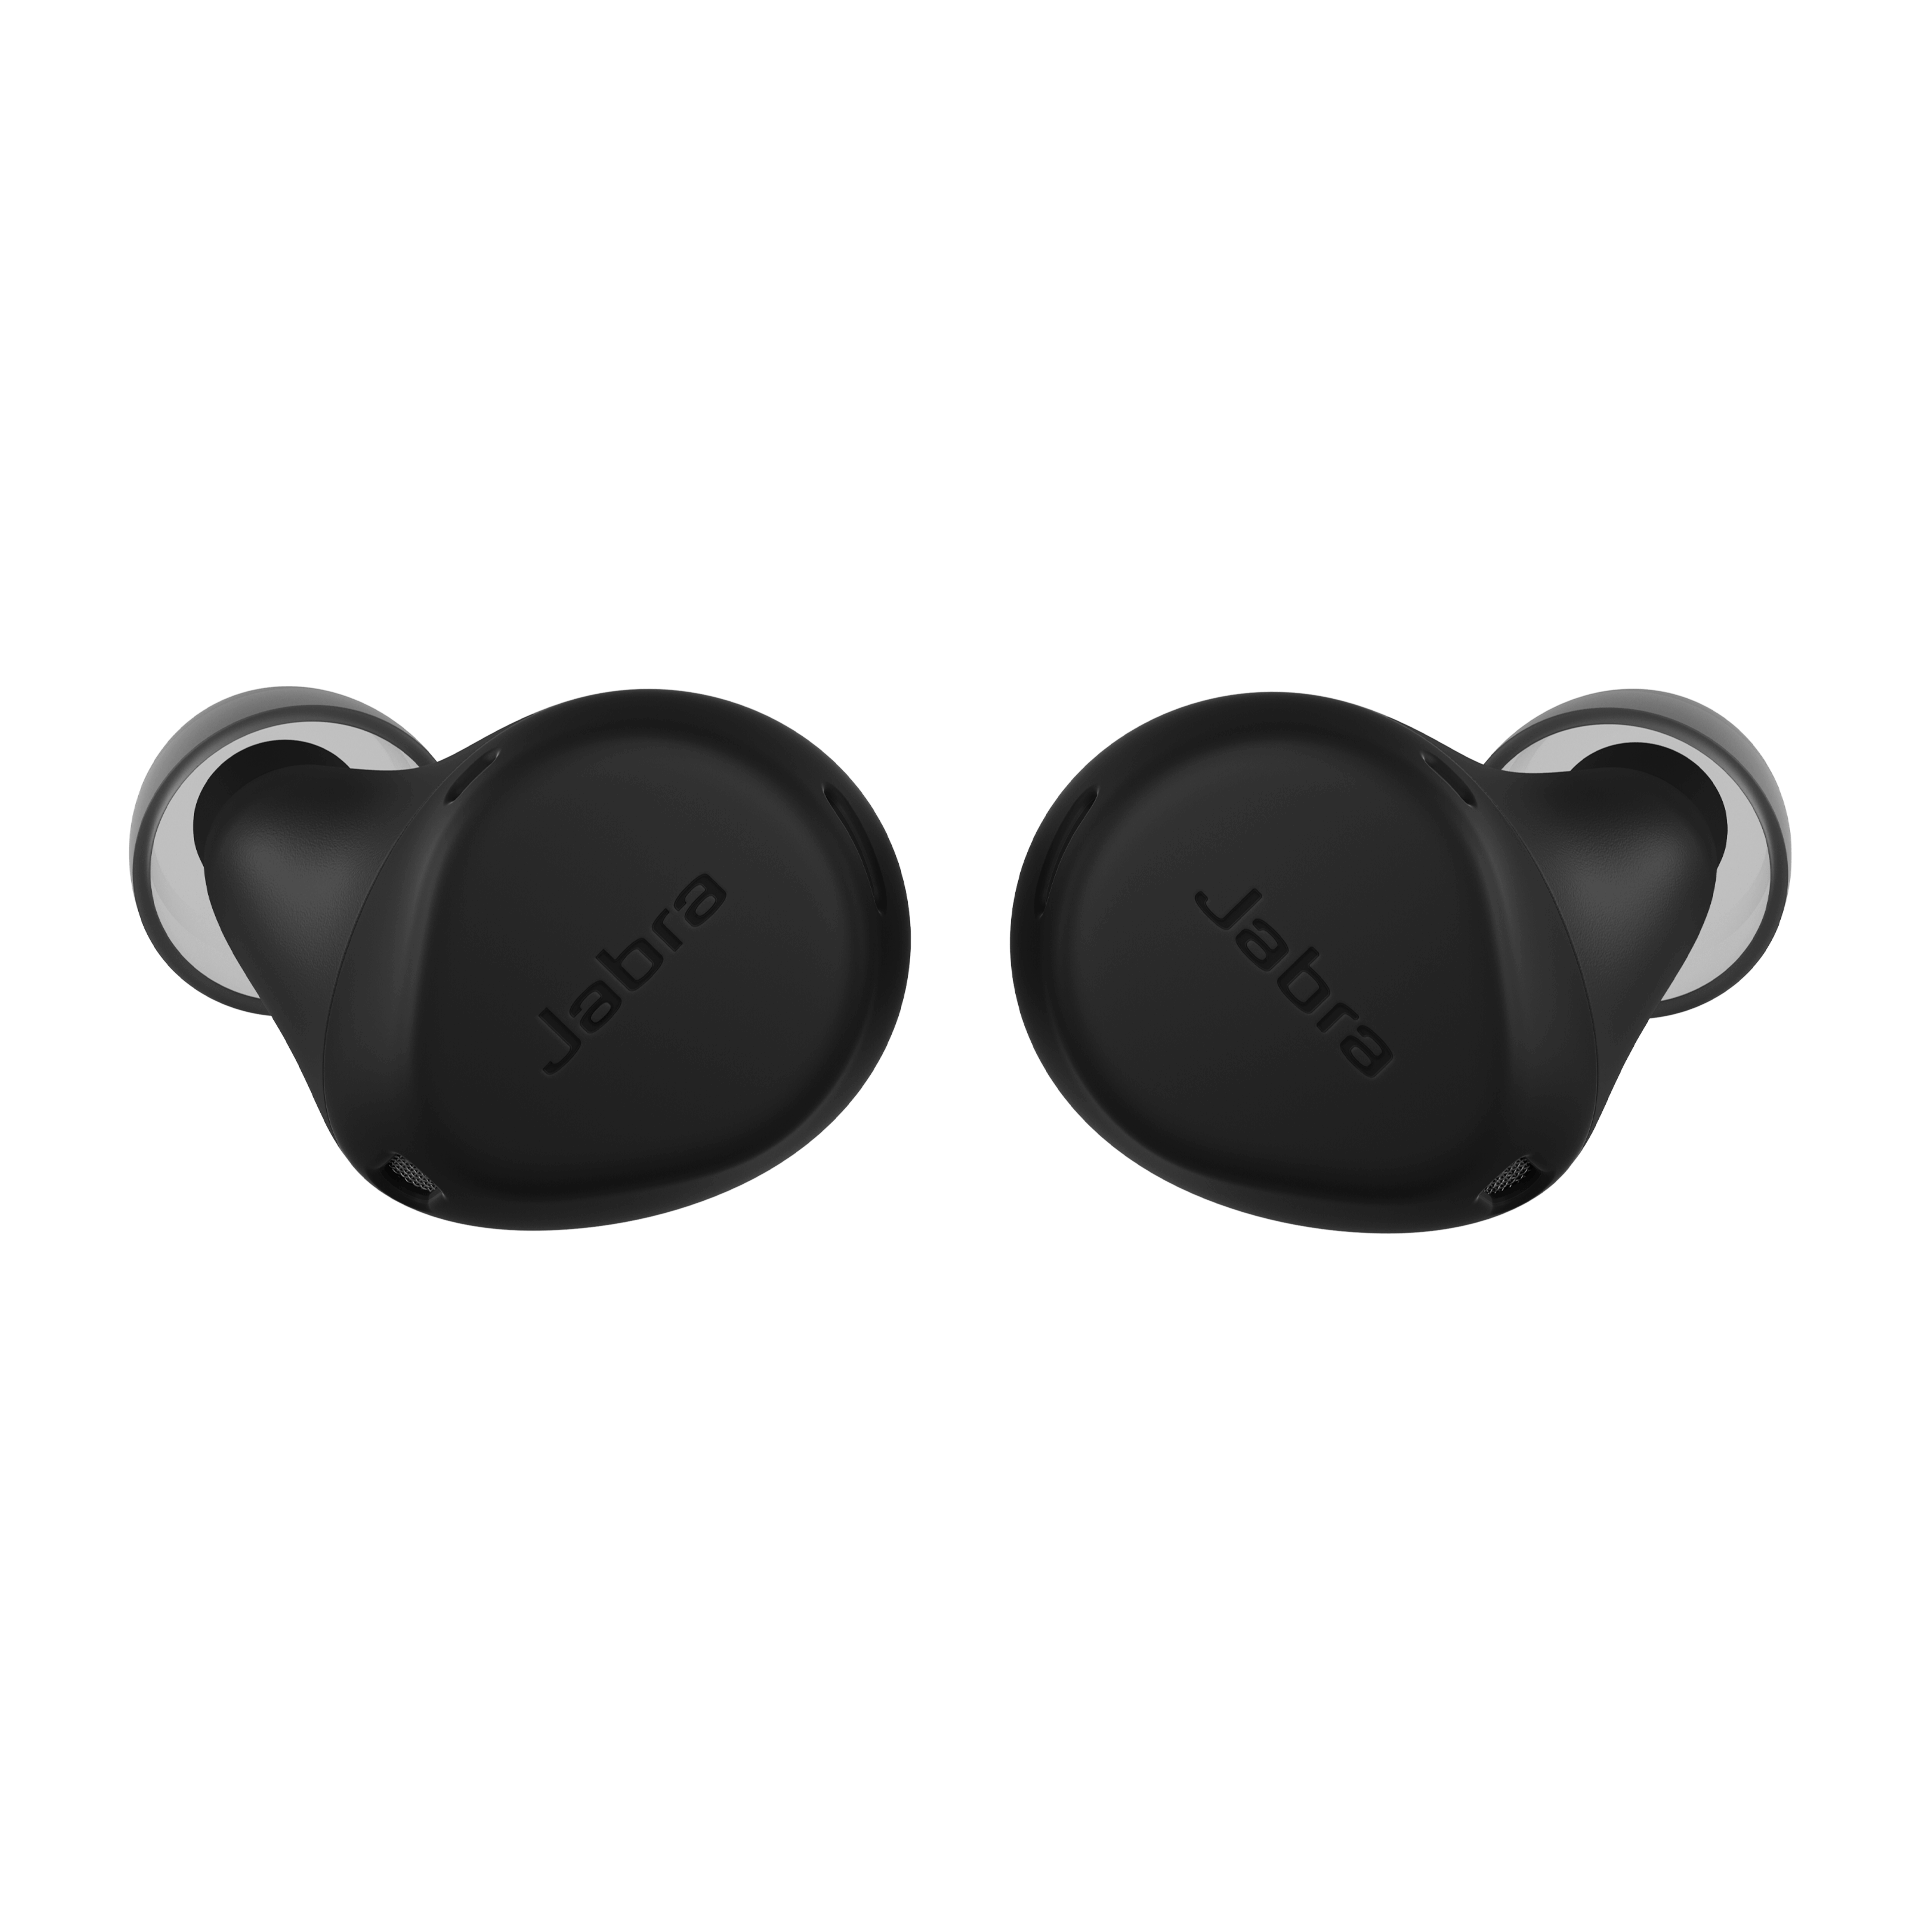 Jabra Elite 7 Active Replacement Earbuds - Black